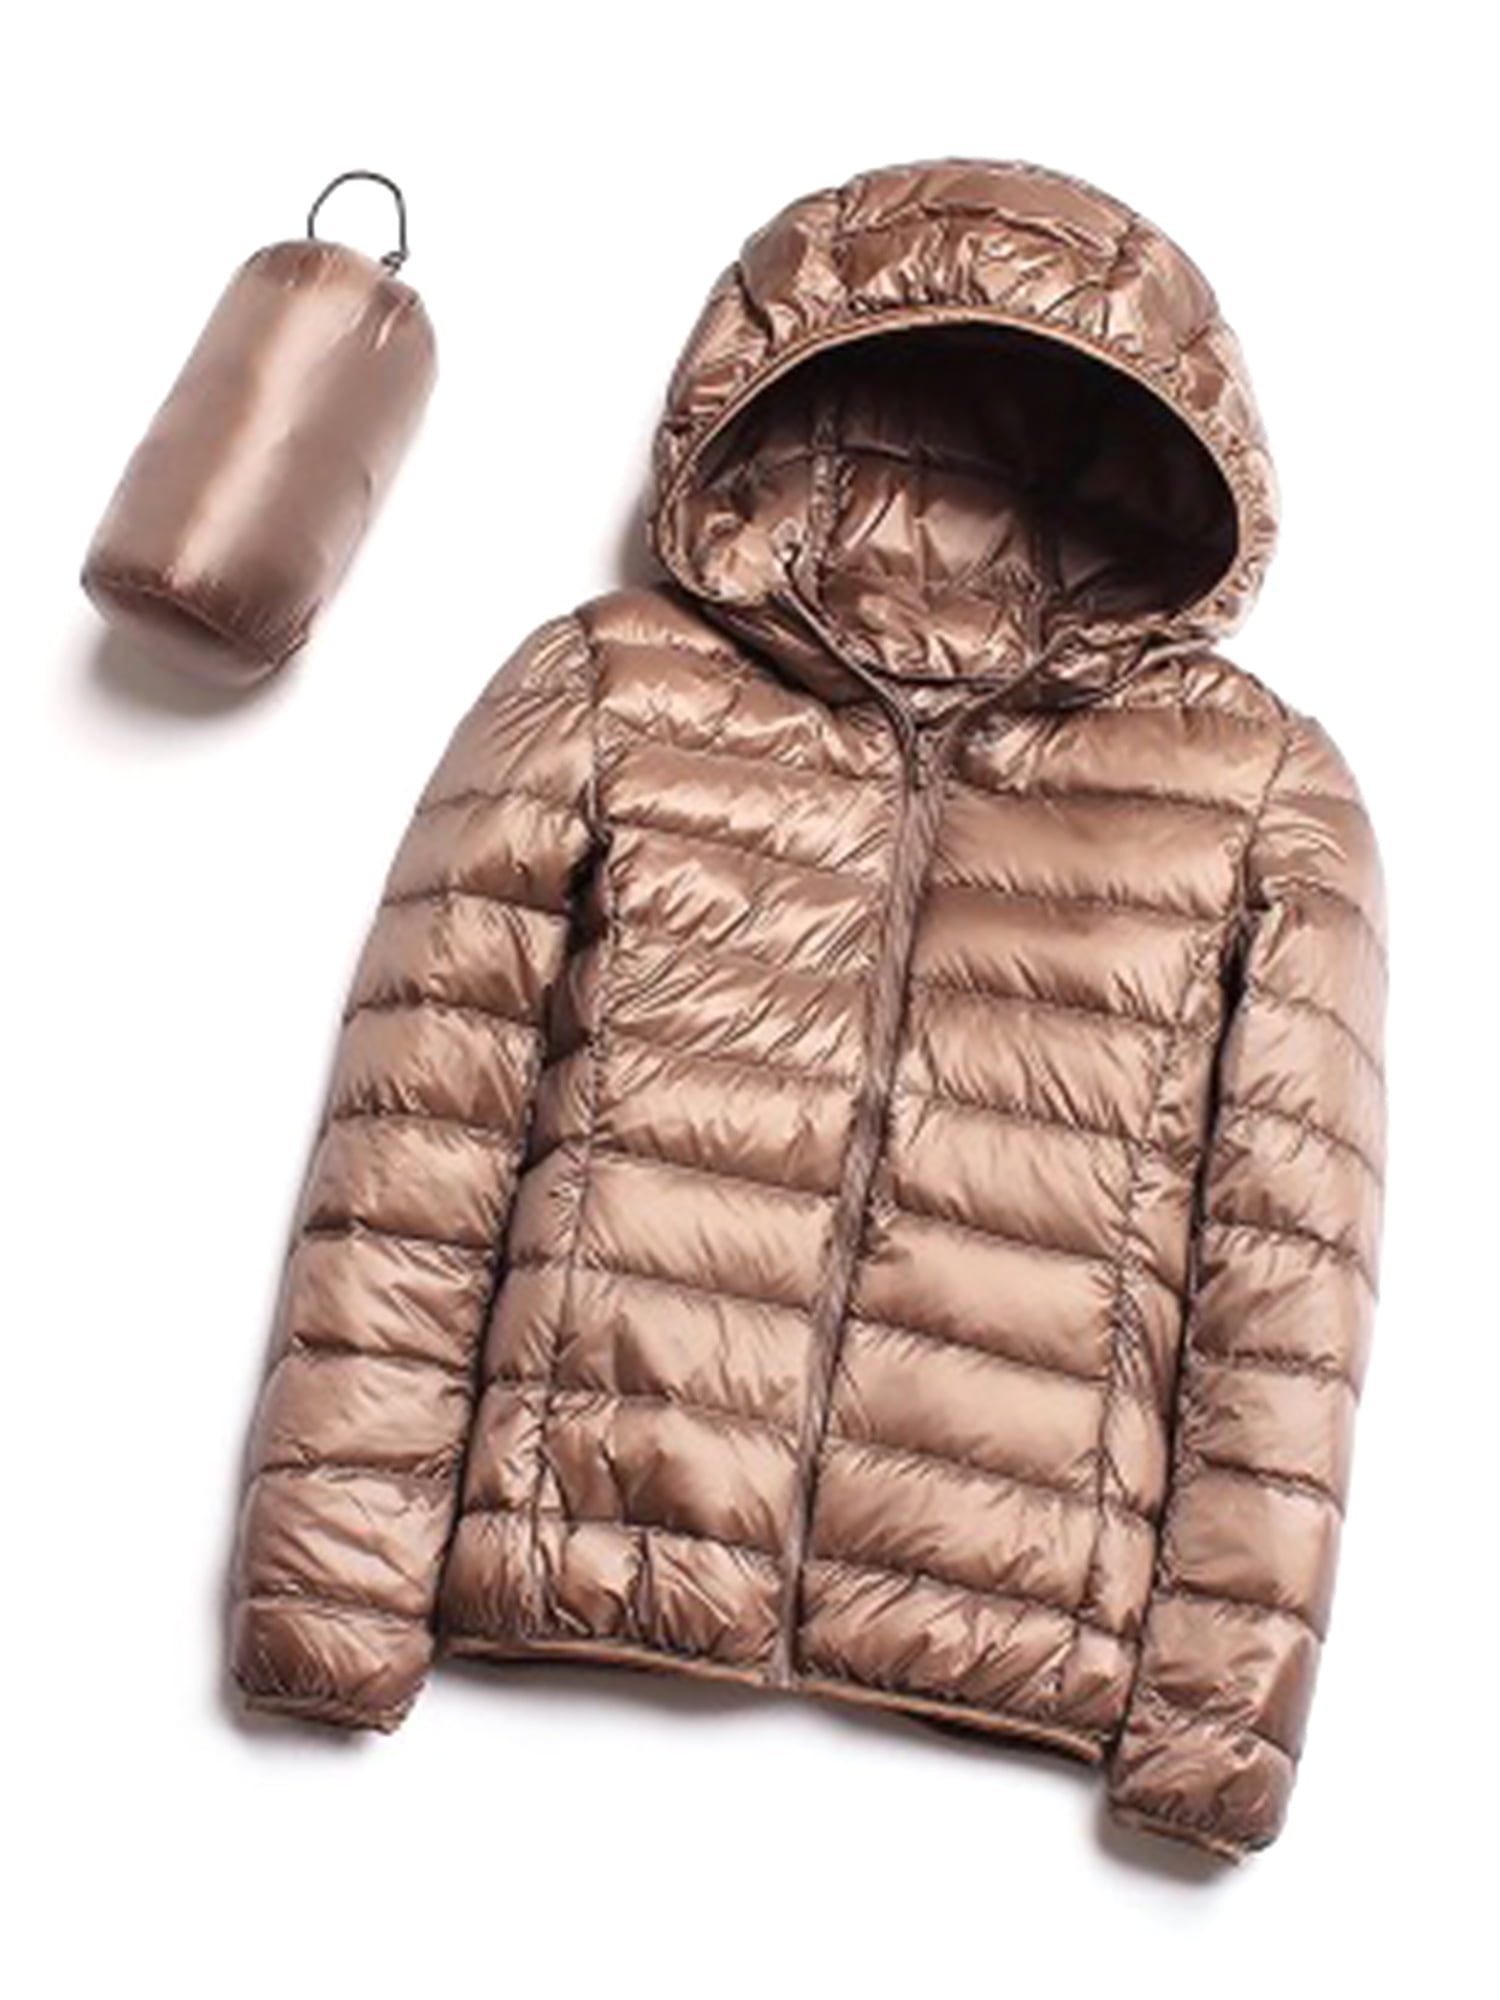 Ultra Light Packable Women's Hooded Winter Warm Down Parka Jacket Outwear Coat